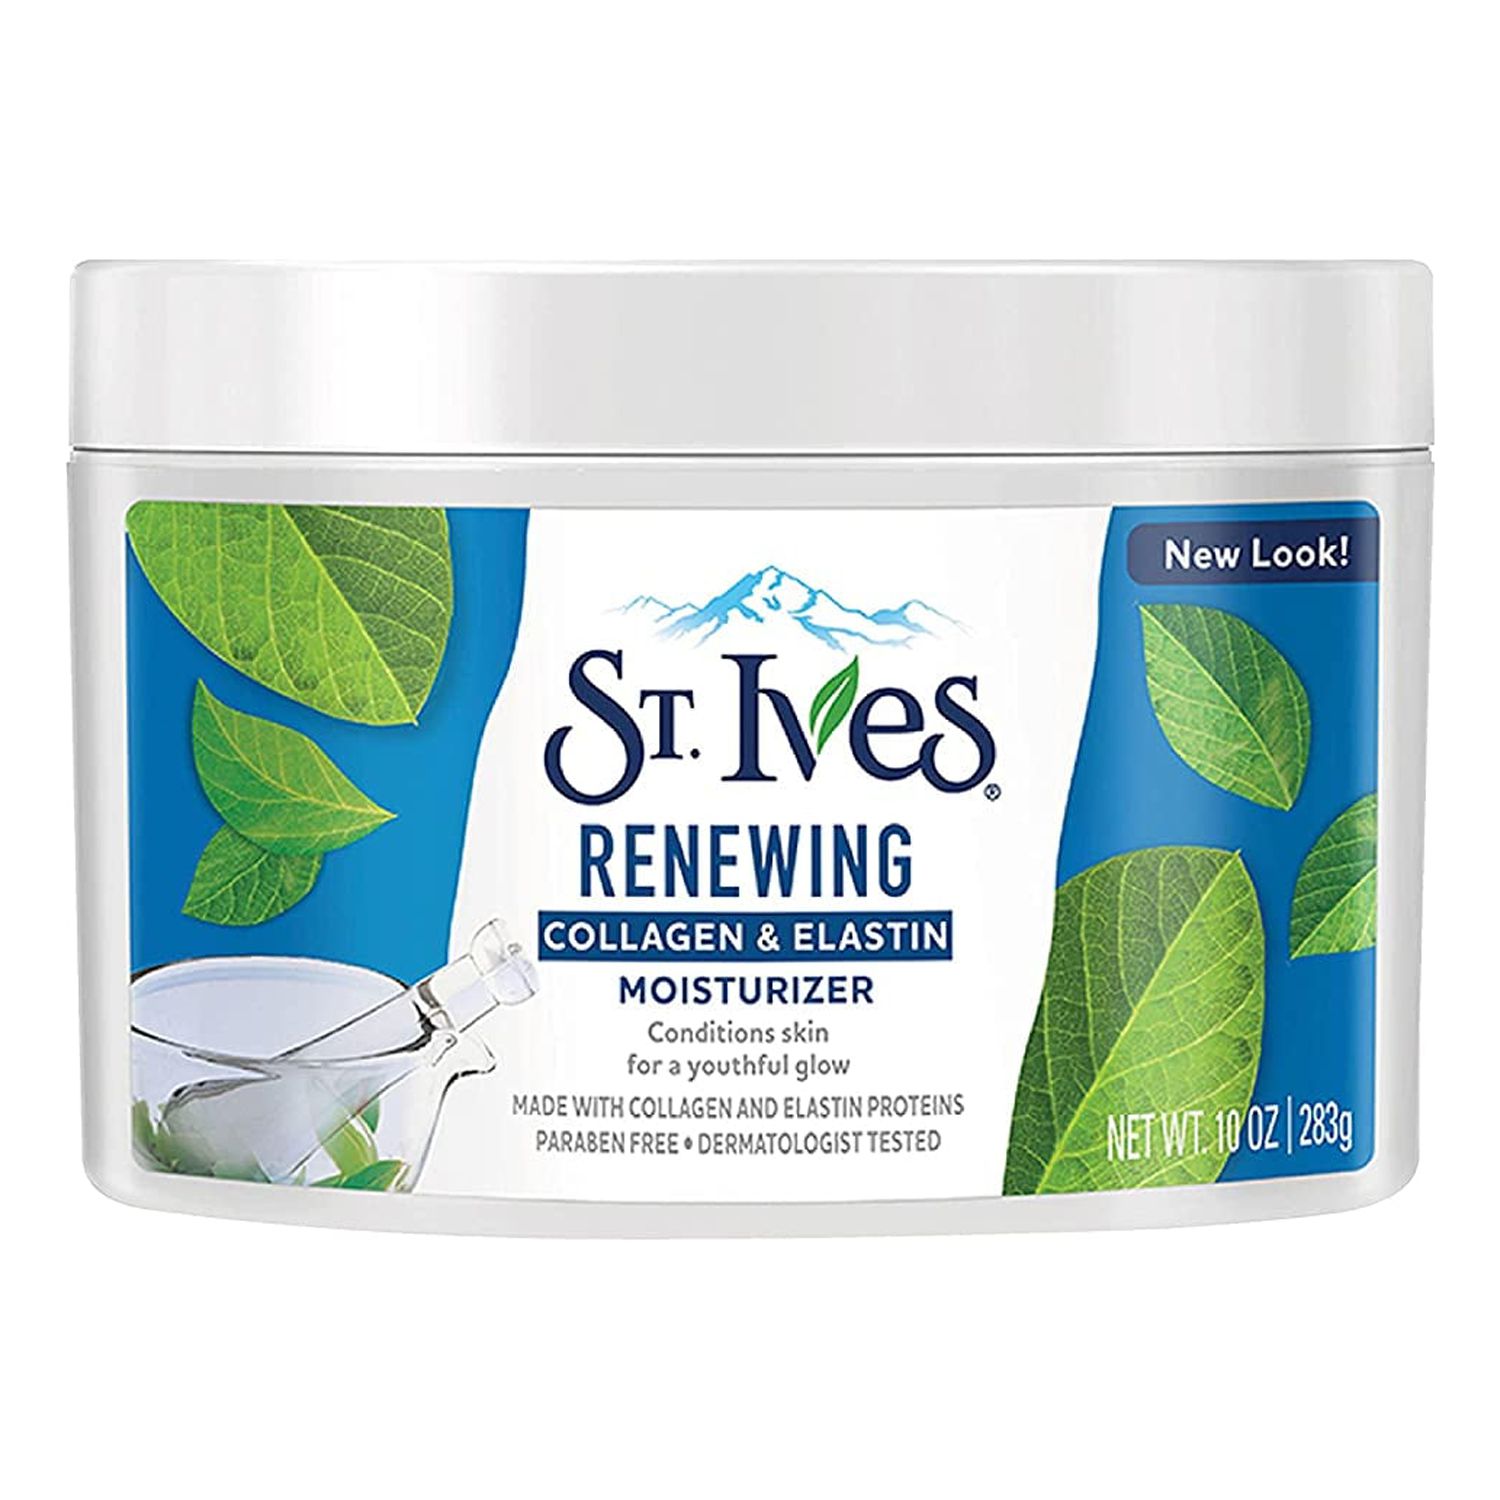 St. Ives Timeless Skin Collagen Elastin Moisturizer, 10 oz (Pack of 2) - image 1 of 5